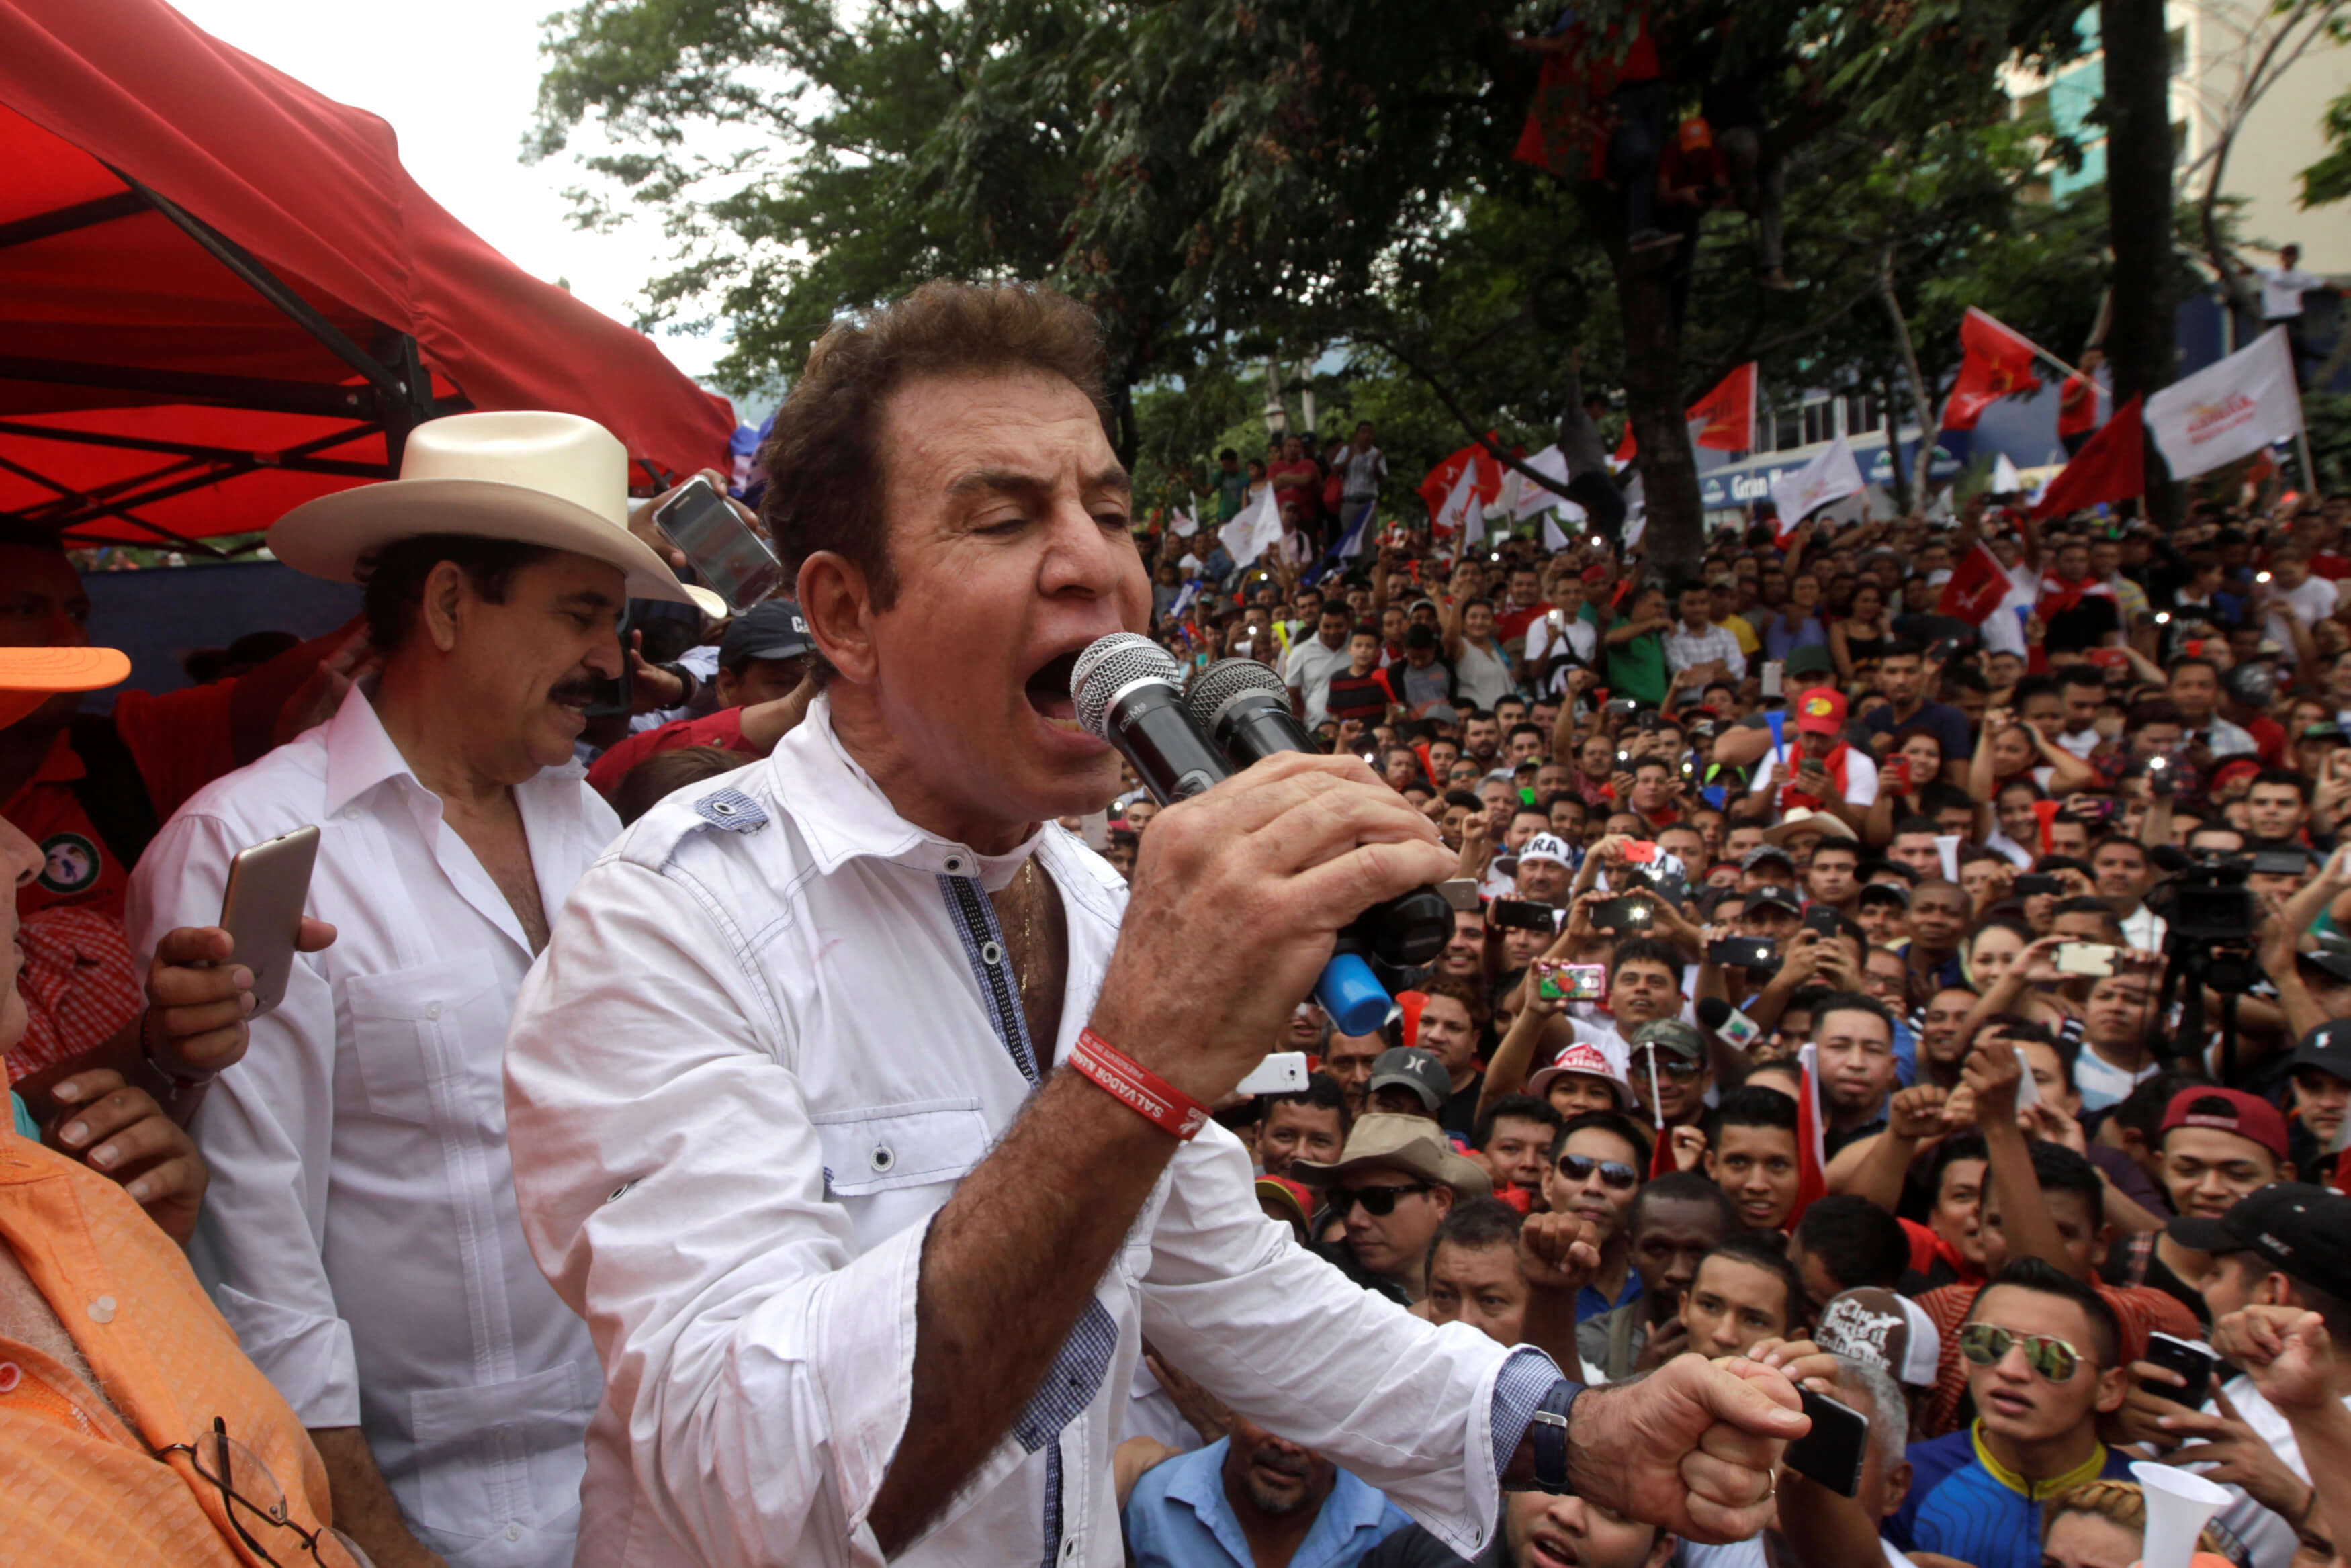 Nasralla busca impedir que Hernández asuma presidencia Honduras